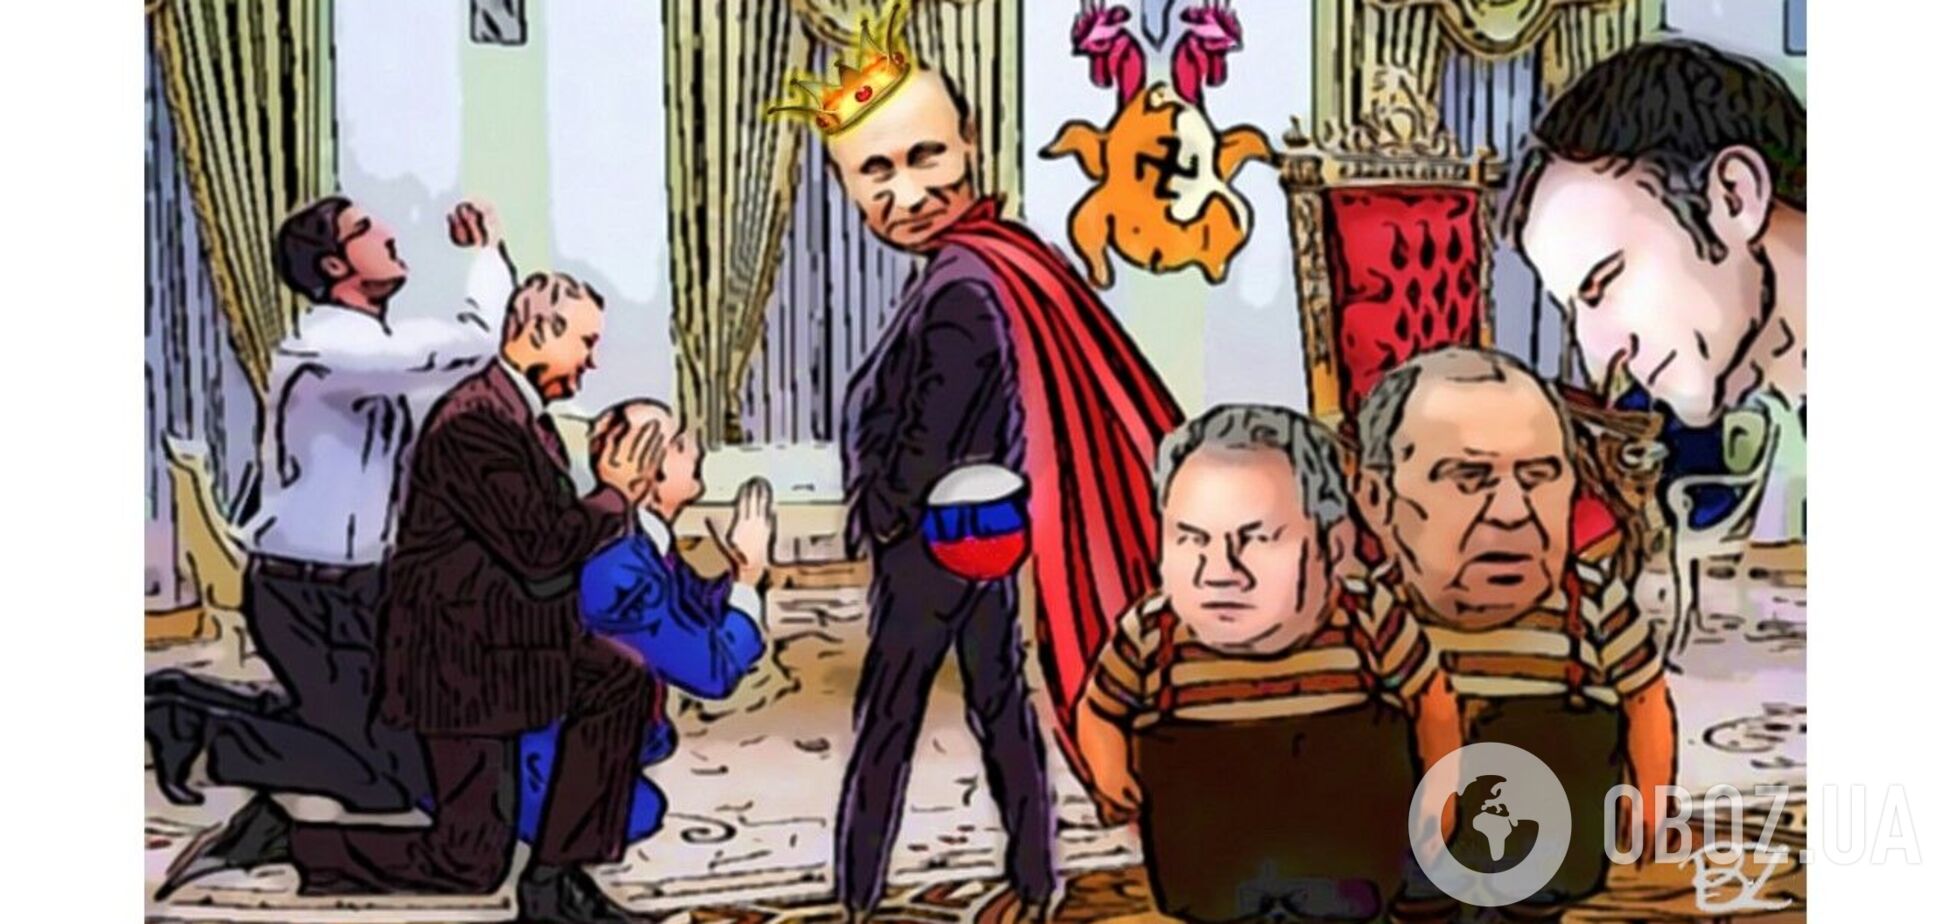 Неужели для политической элиты Франции Родина и задница лидера совпадают также, как в России?